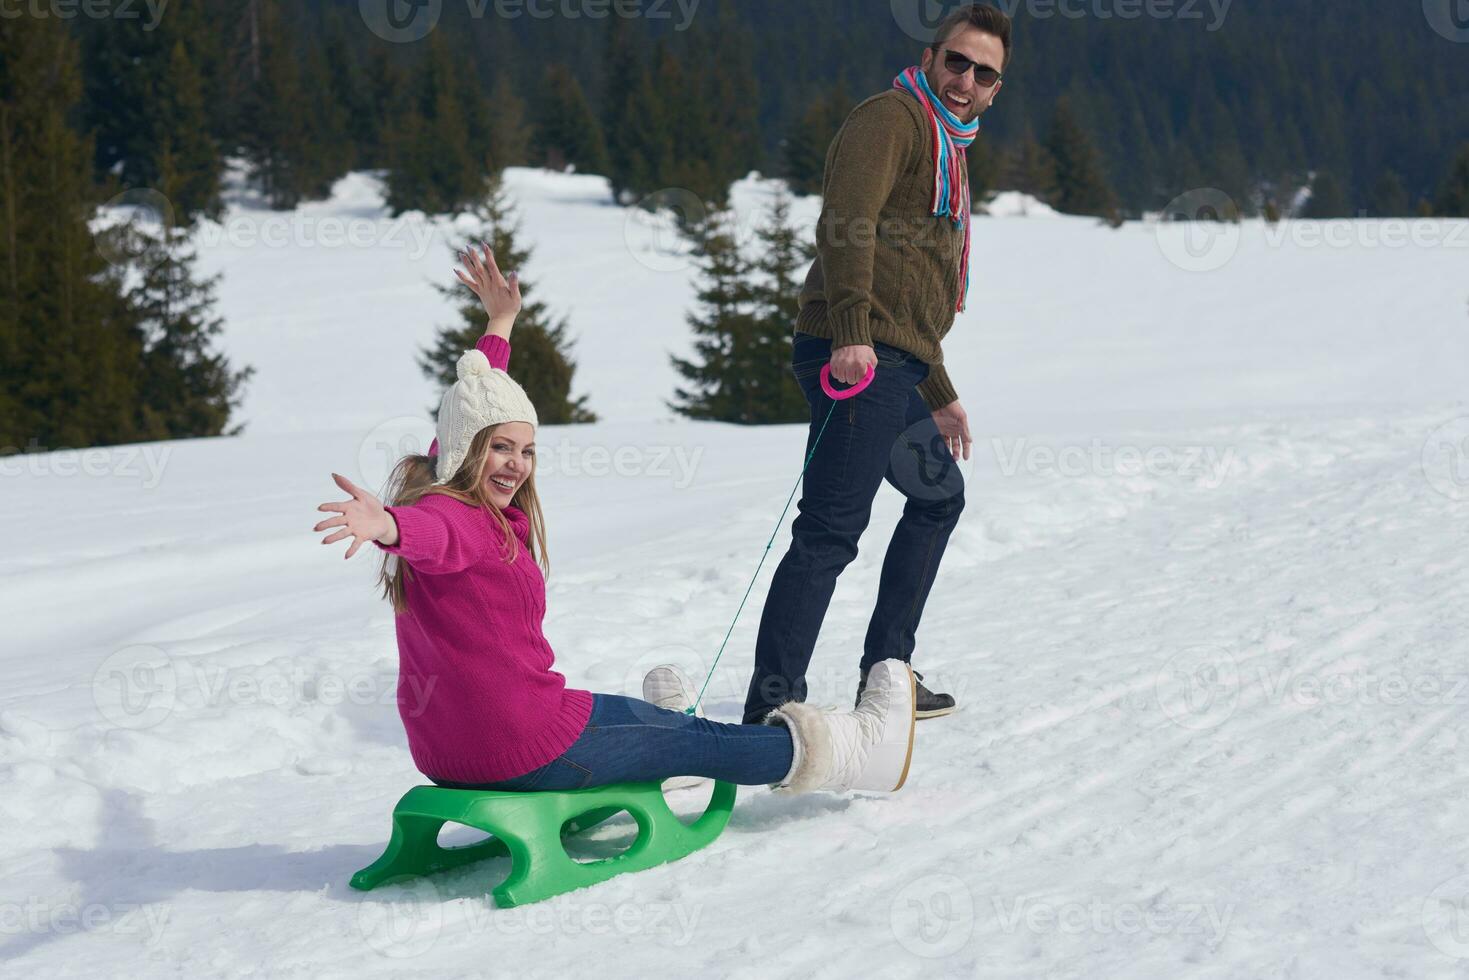 feliz pareja joven divirtiéndose en un espectáculo fresco en vacaciones de invierno foto